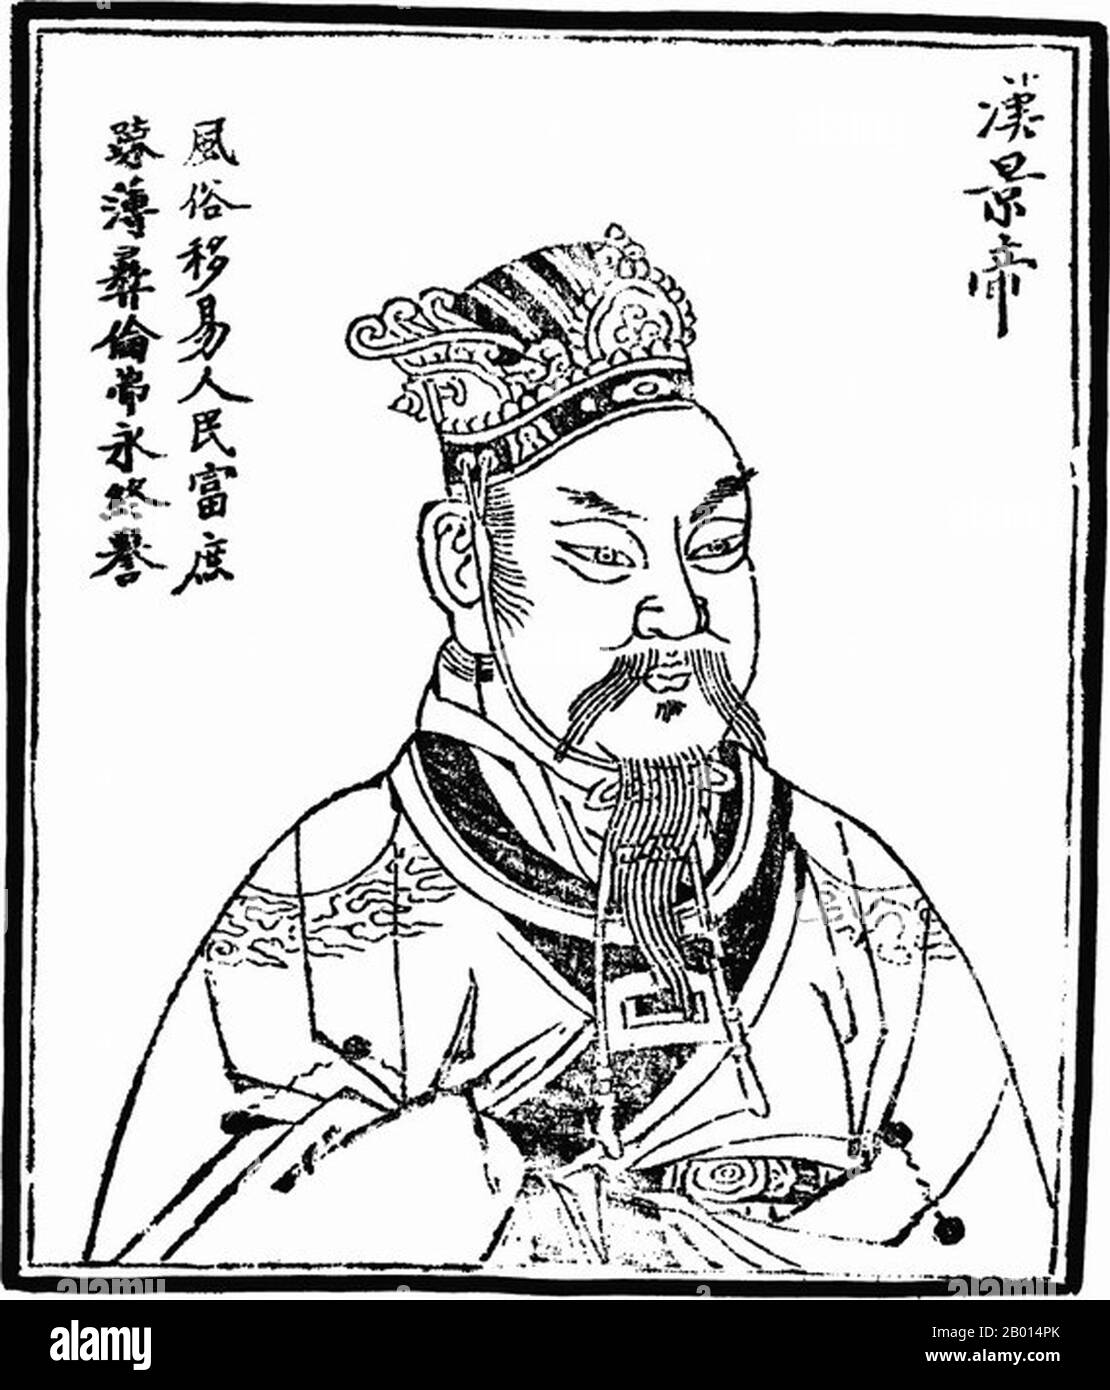 Cina: Imperatore Jingdi (188-9 marzo 141 a.C.), sesto imperatore della dinastia Han occidentale (r.156-141 a.C.). Illustrazione, c. 1498 l'imperatore Jing di Han, nome personale Liu Qi, fu imperatore della dinastia Han. Il suo regno vide la riduzione del potere dei principi feudali, che portarono alla ribellione dei sette stati nel 154 a.C. L'Imperatore Jing riuscì a sconfiggere la rivolta e ai principi furono successivamente negati i diritti di nominare ministri per i propri feudi. Questa mossa consolidò il potere centrale, spianando la strada al glorioso e lungo regno di suo figlio imperatore Wu di Han. Foto Stock